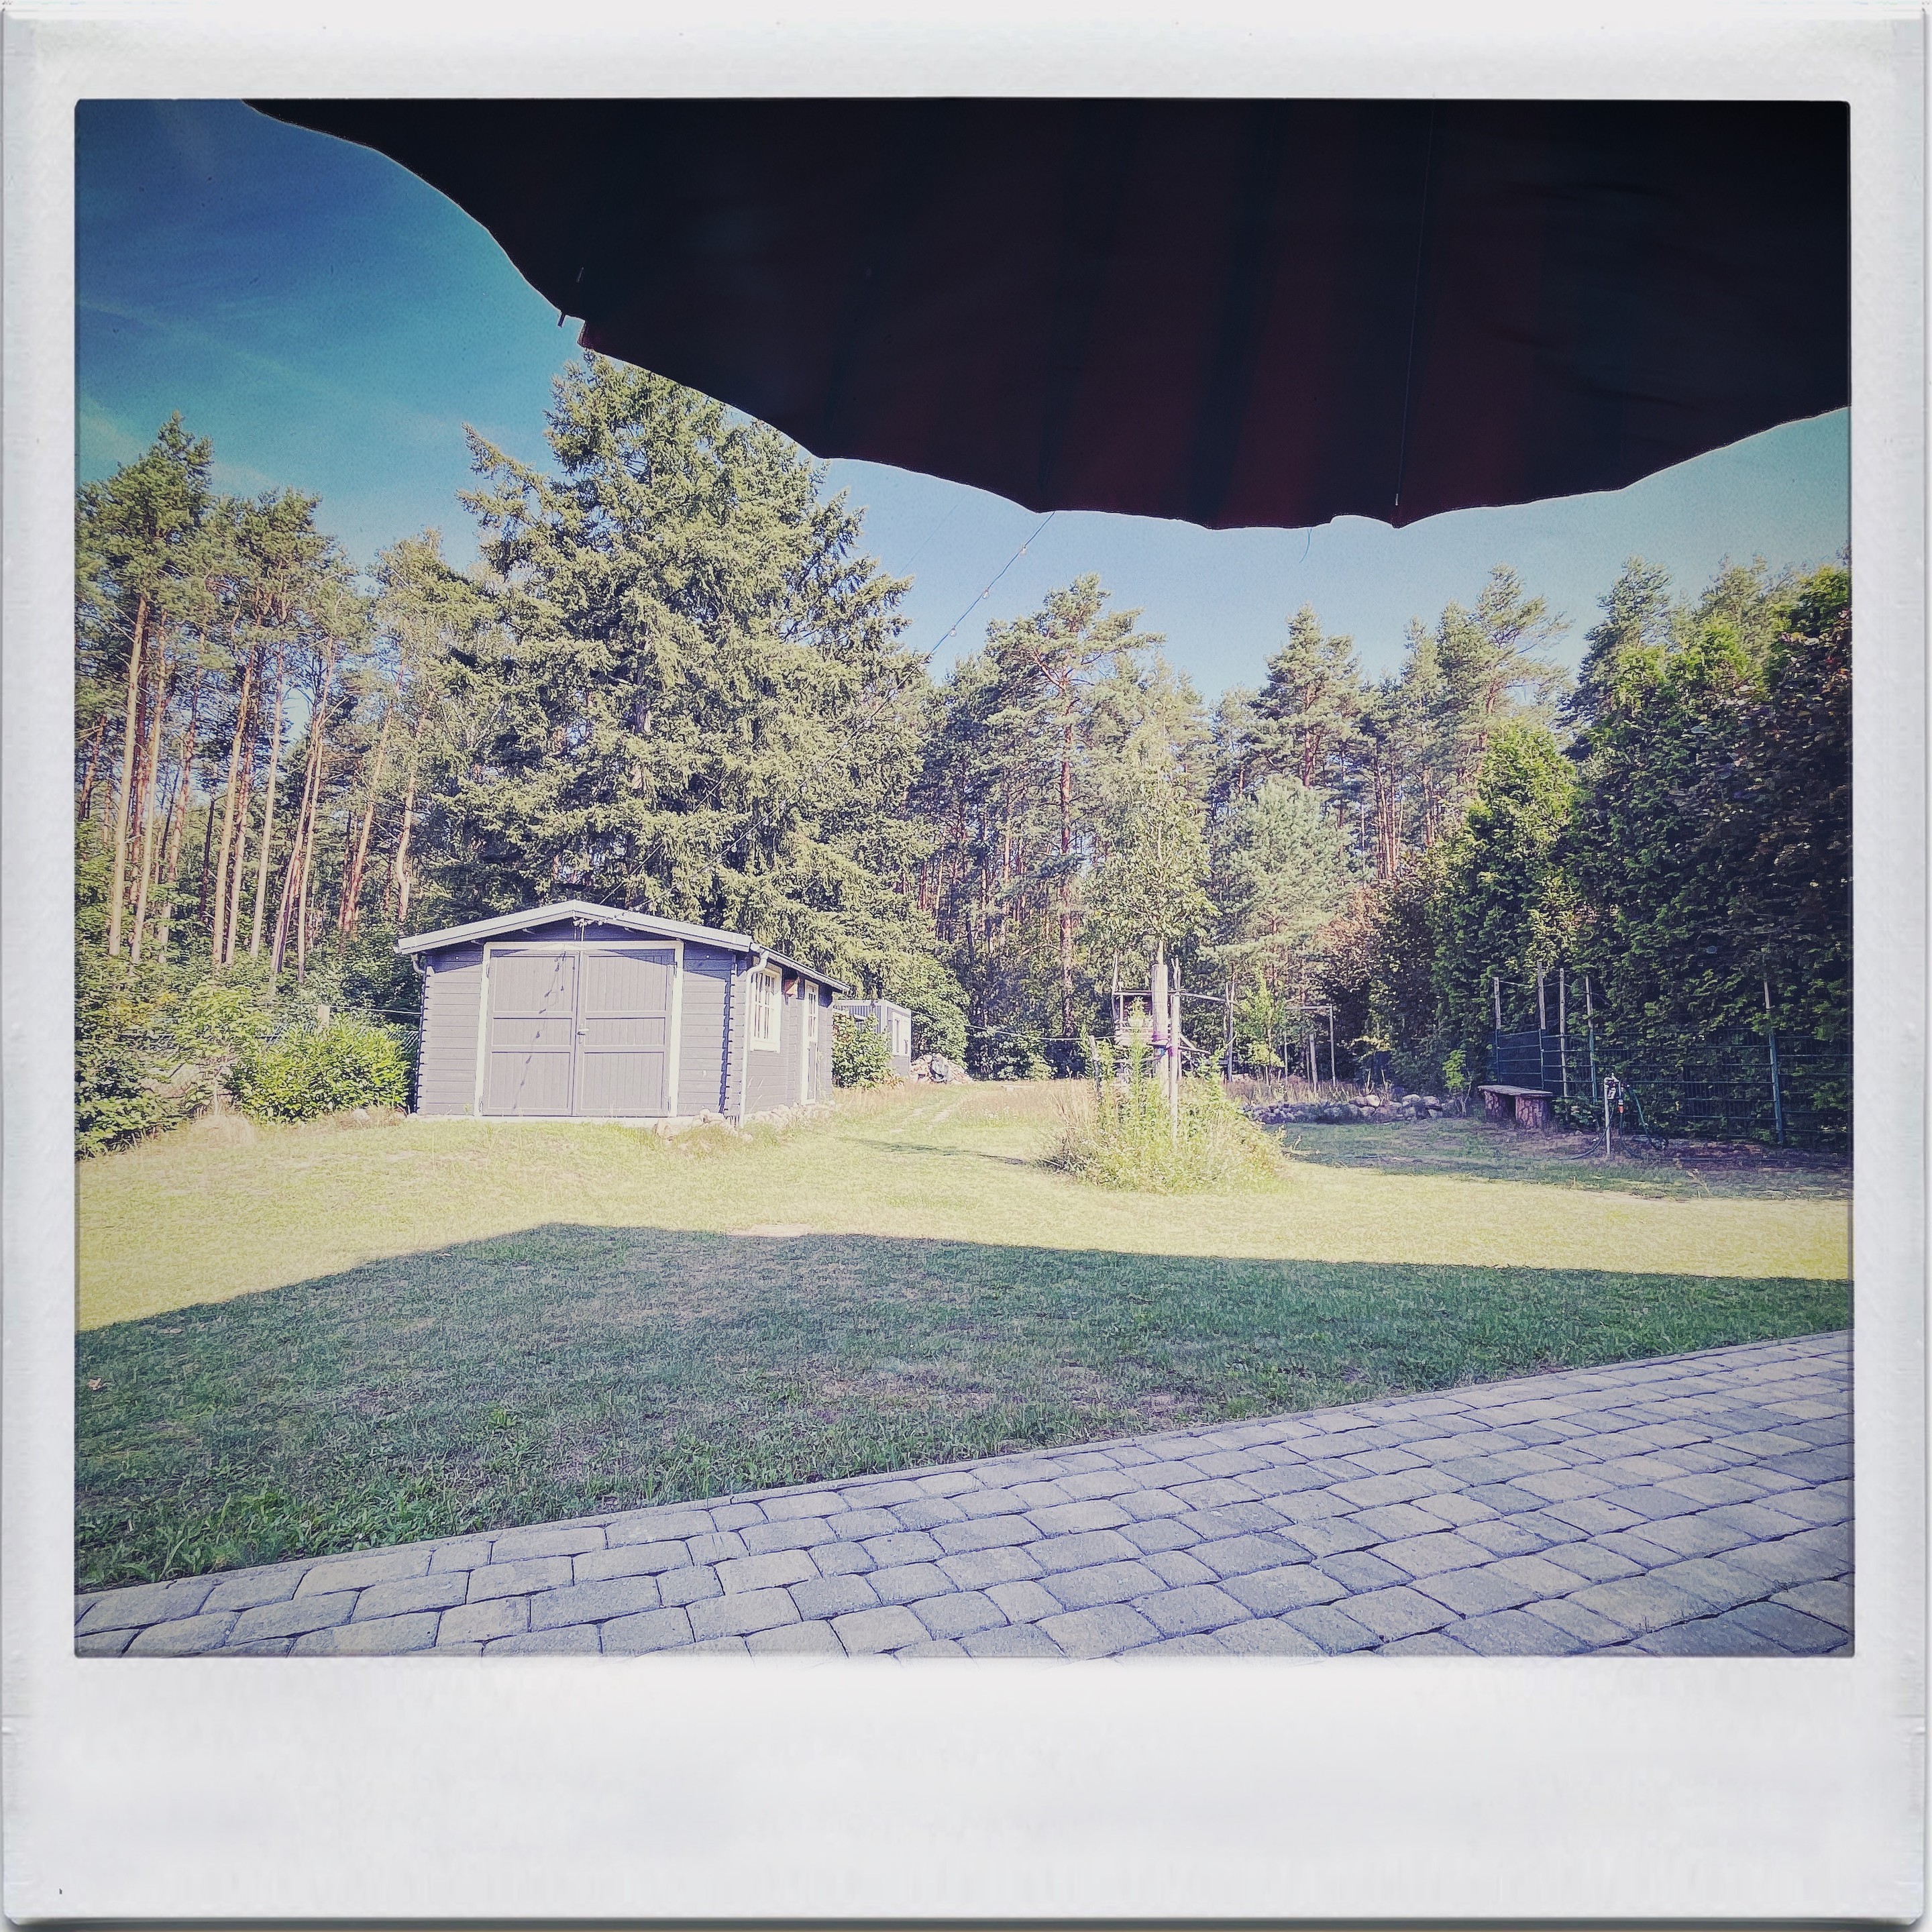 Outdoor-Szene mit einem grasbewachsenen Hinterhof, einem grauen Schuppen und einem von Bäumen gesäumten Hintergrund. Ein großer, dunkler Sonnenschirm bedeckt teilweise die Oberseite des Bildes und wirft einen Schatten über den gepflasterten Vordergrund.